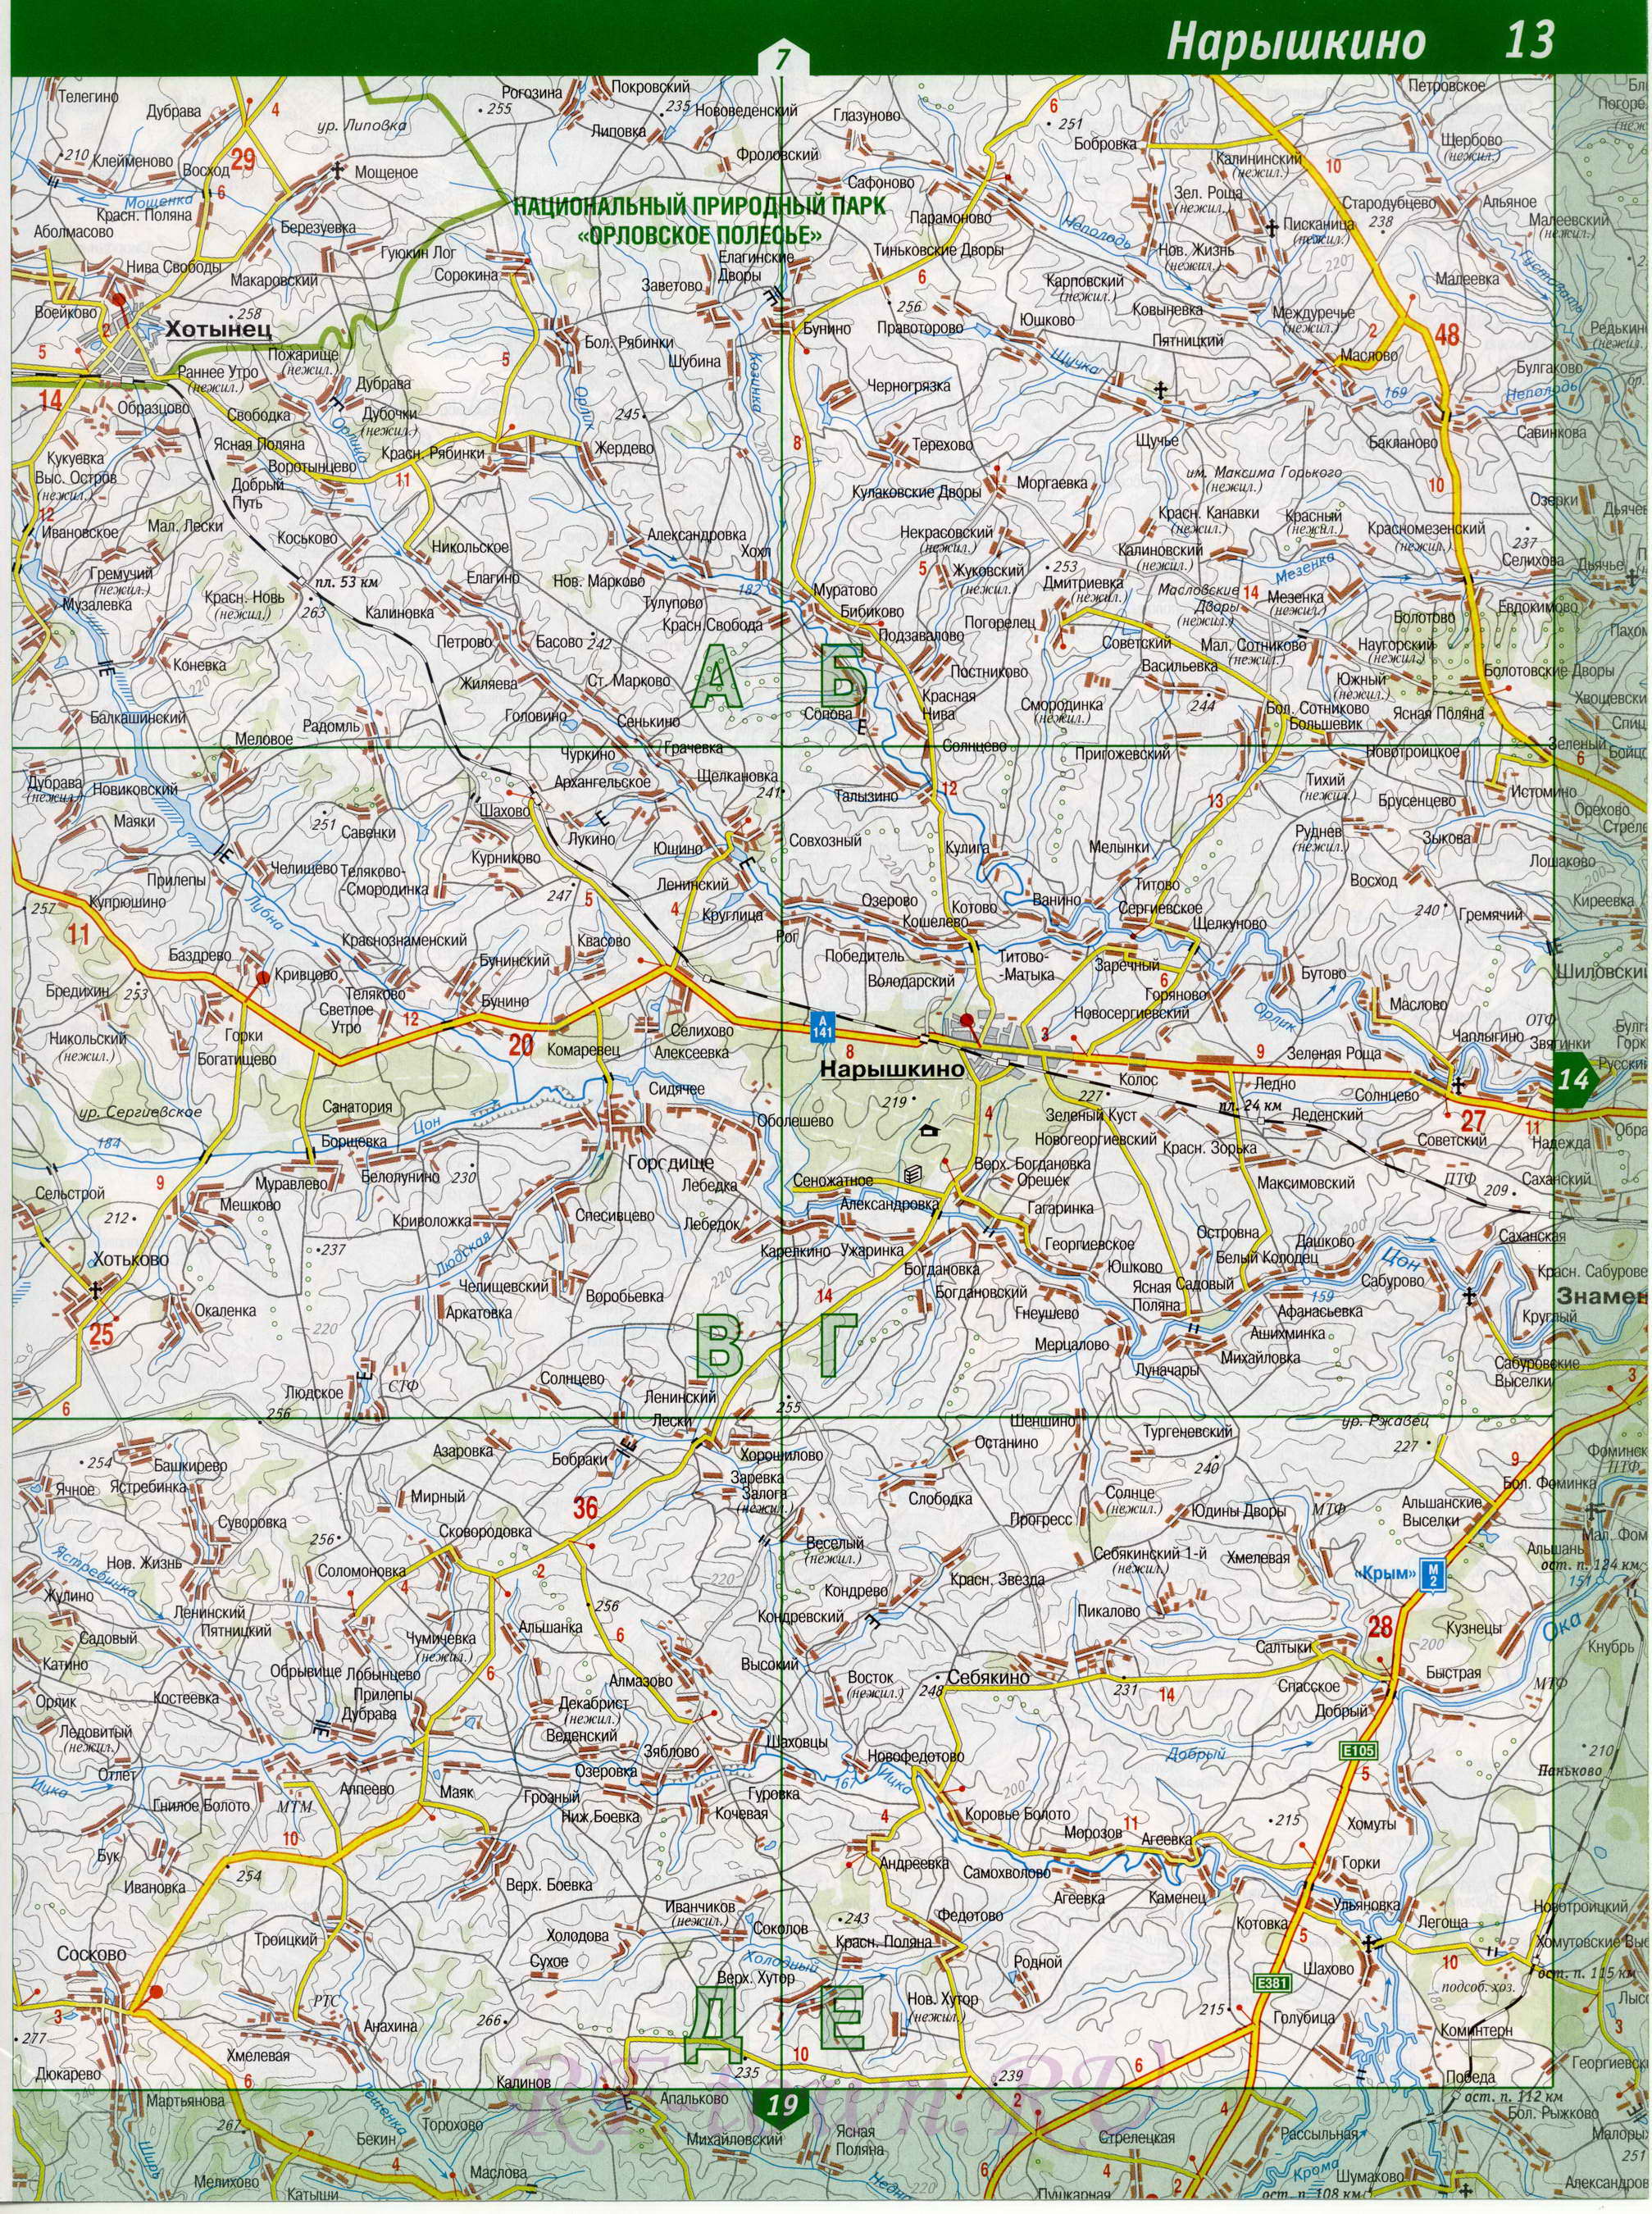 Карта Орловской области. Орловская область - подробная топографическая карта масштаба 1см:2км, A1 - 